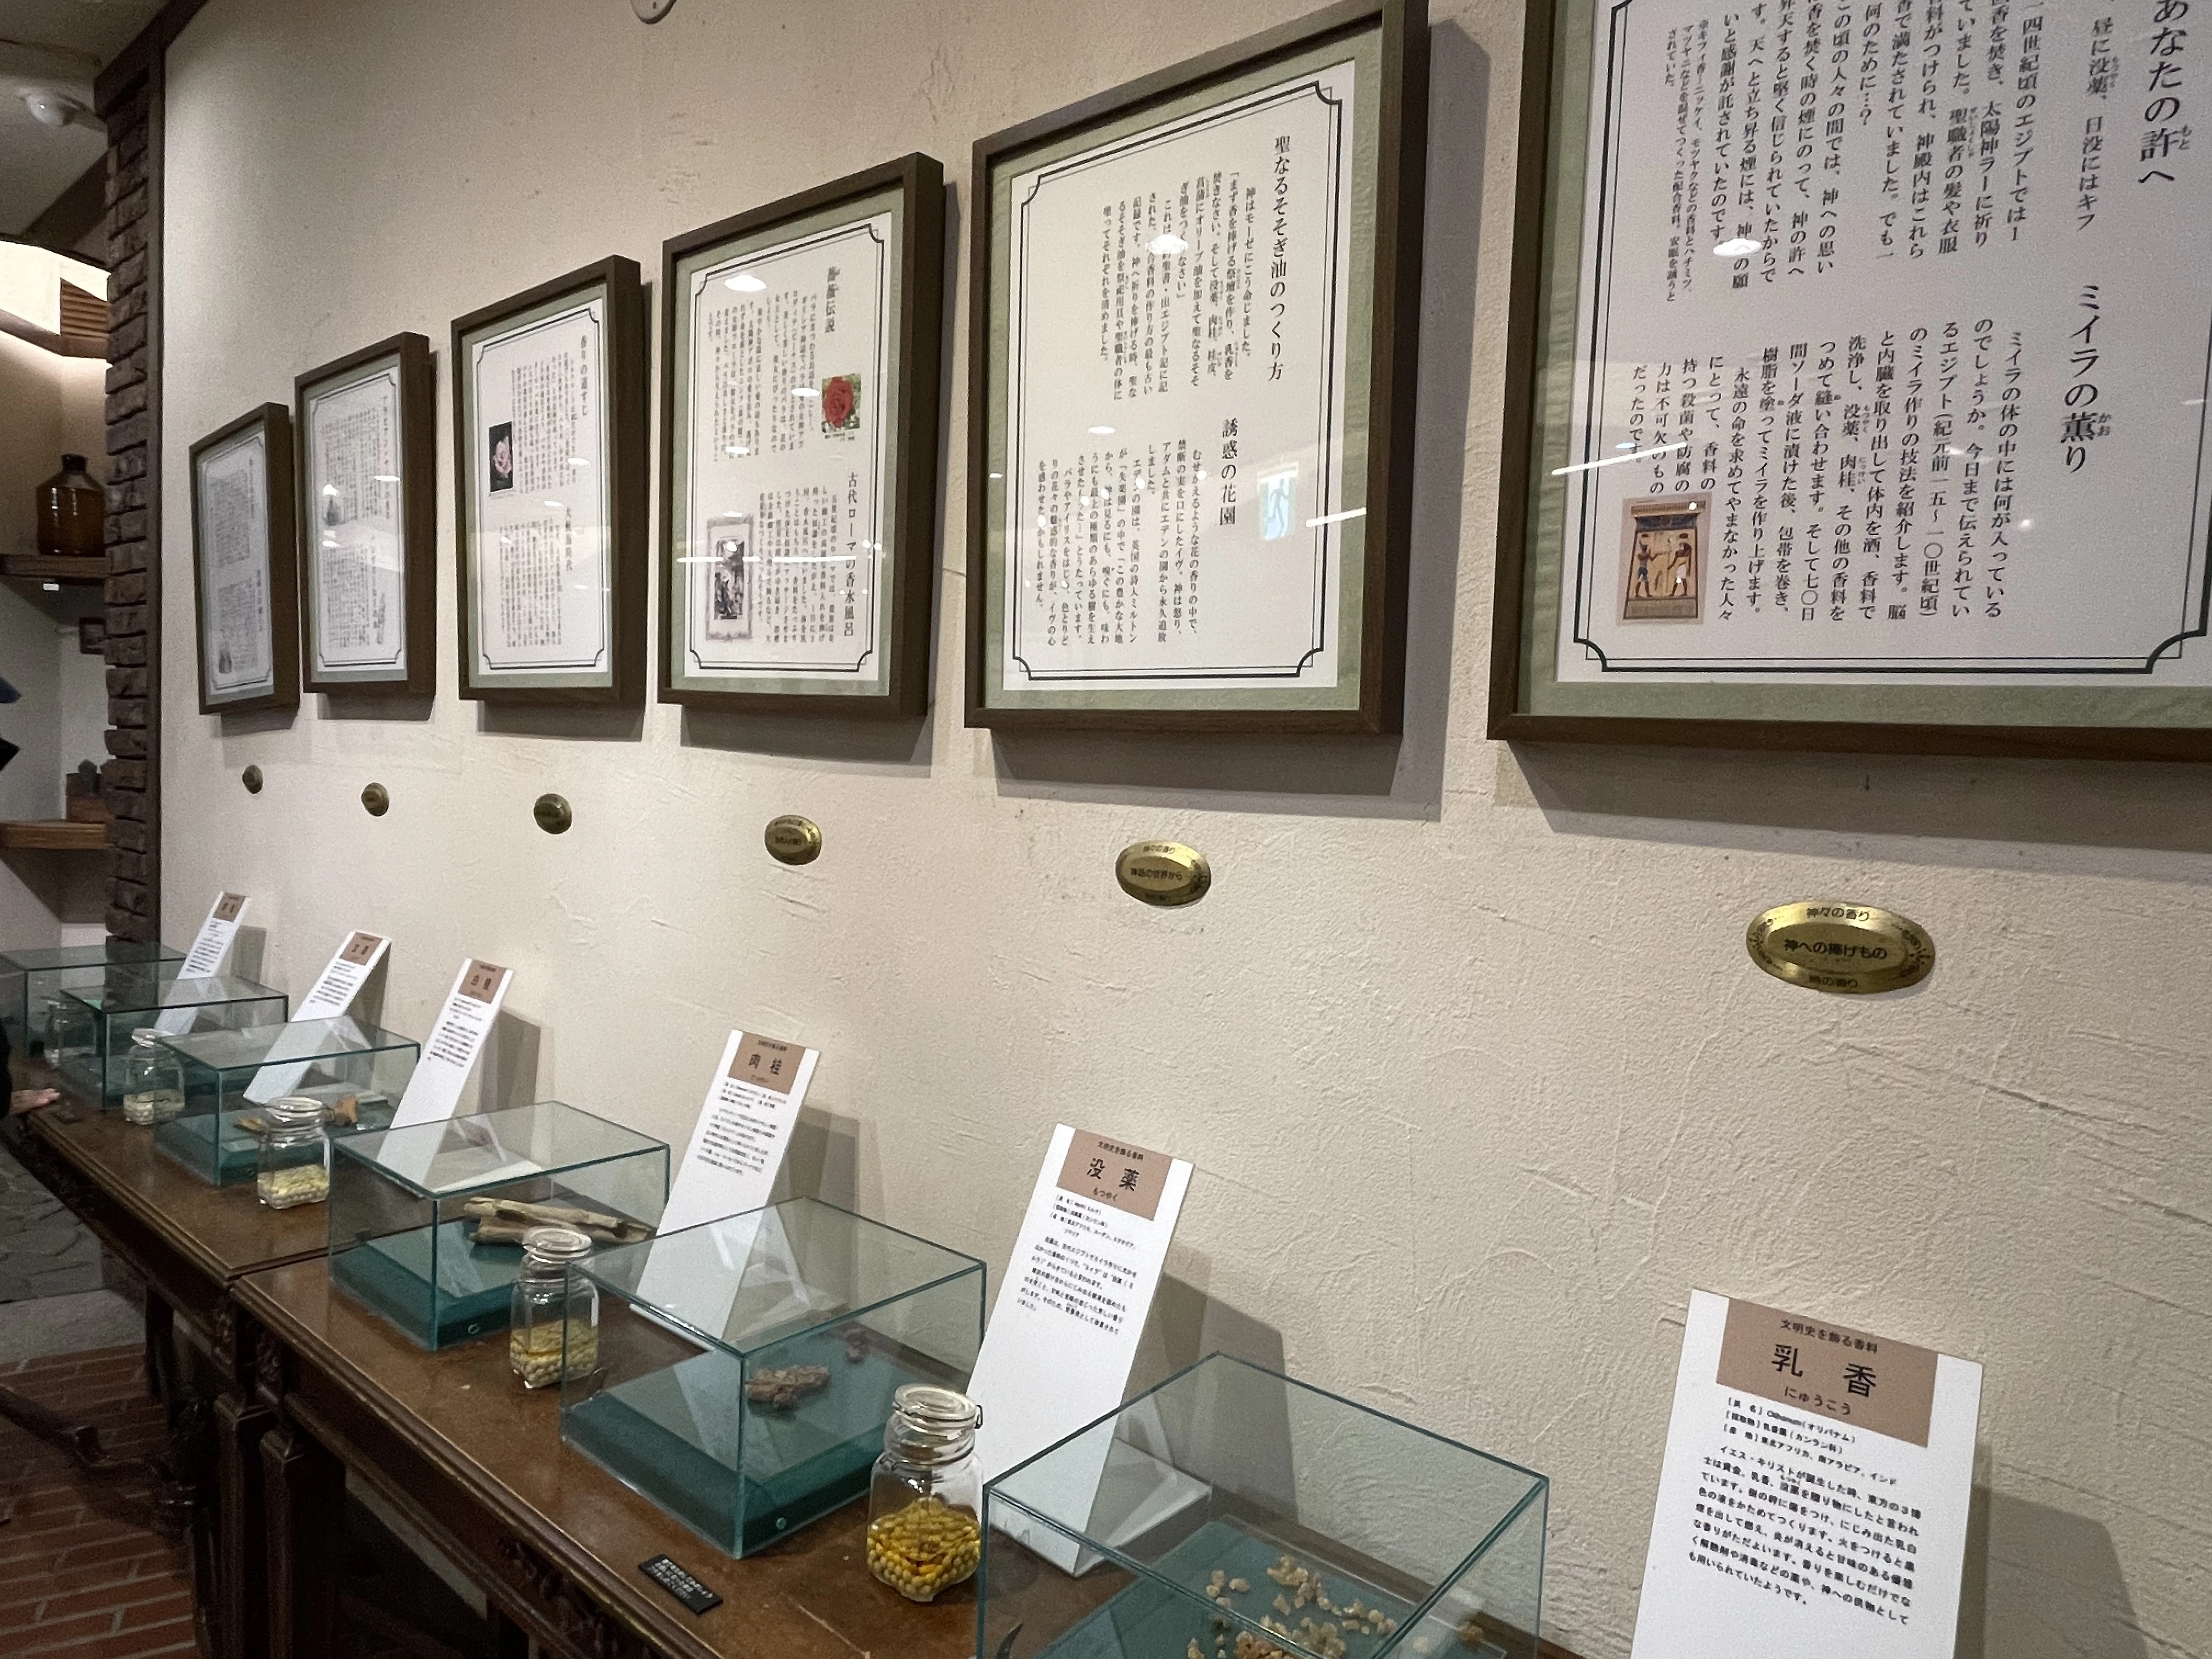 神戸布引ハーブ園 香りの資料館「香料そのむかし」展示